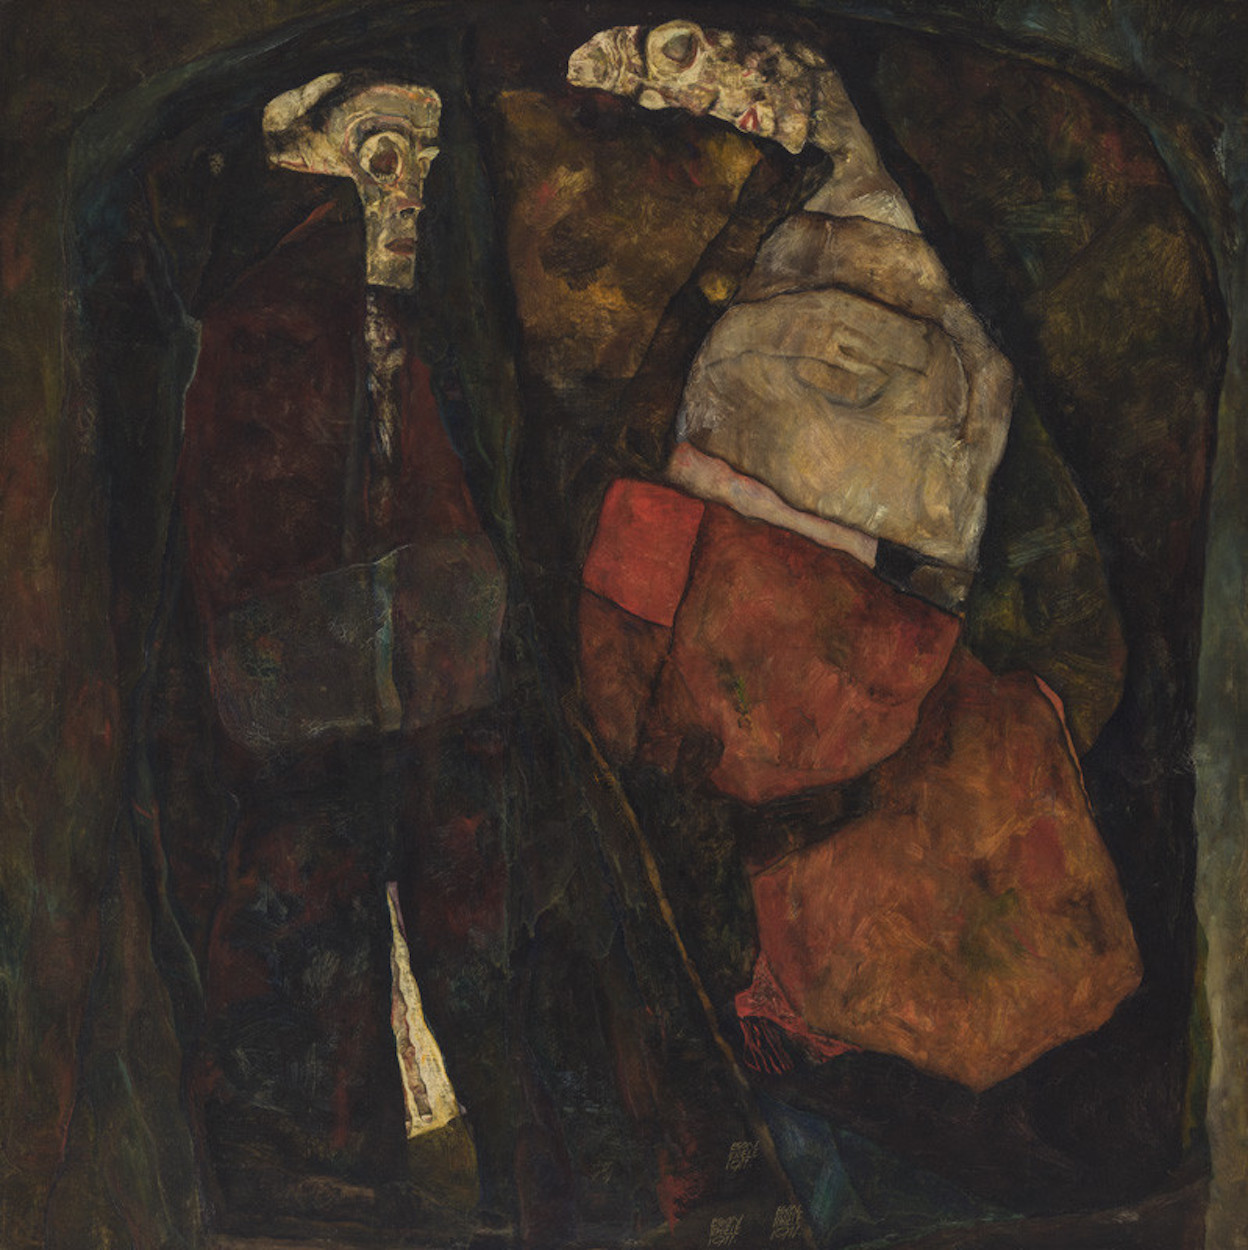 गर्भवती महिला और मृत्यु (माता और मृत्यु) by Egon Schiele - 1911 - 100 x 100 cm 